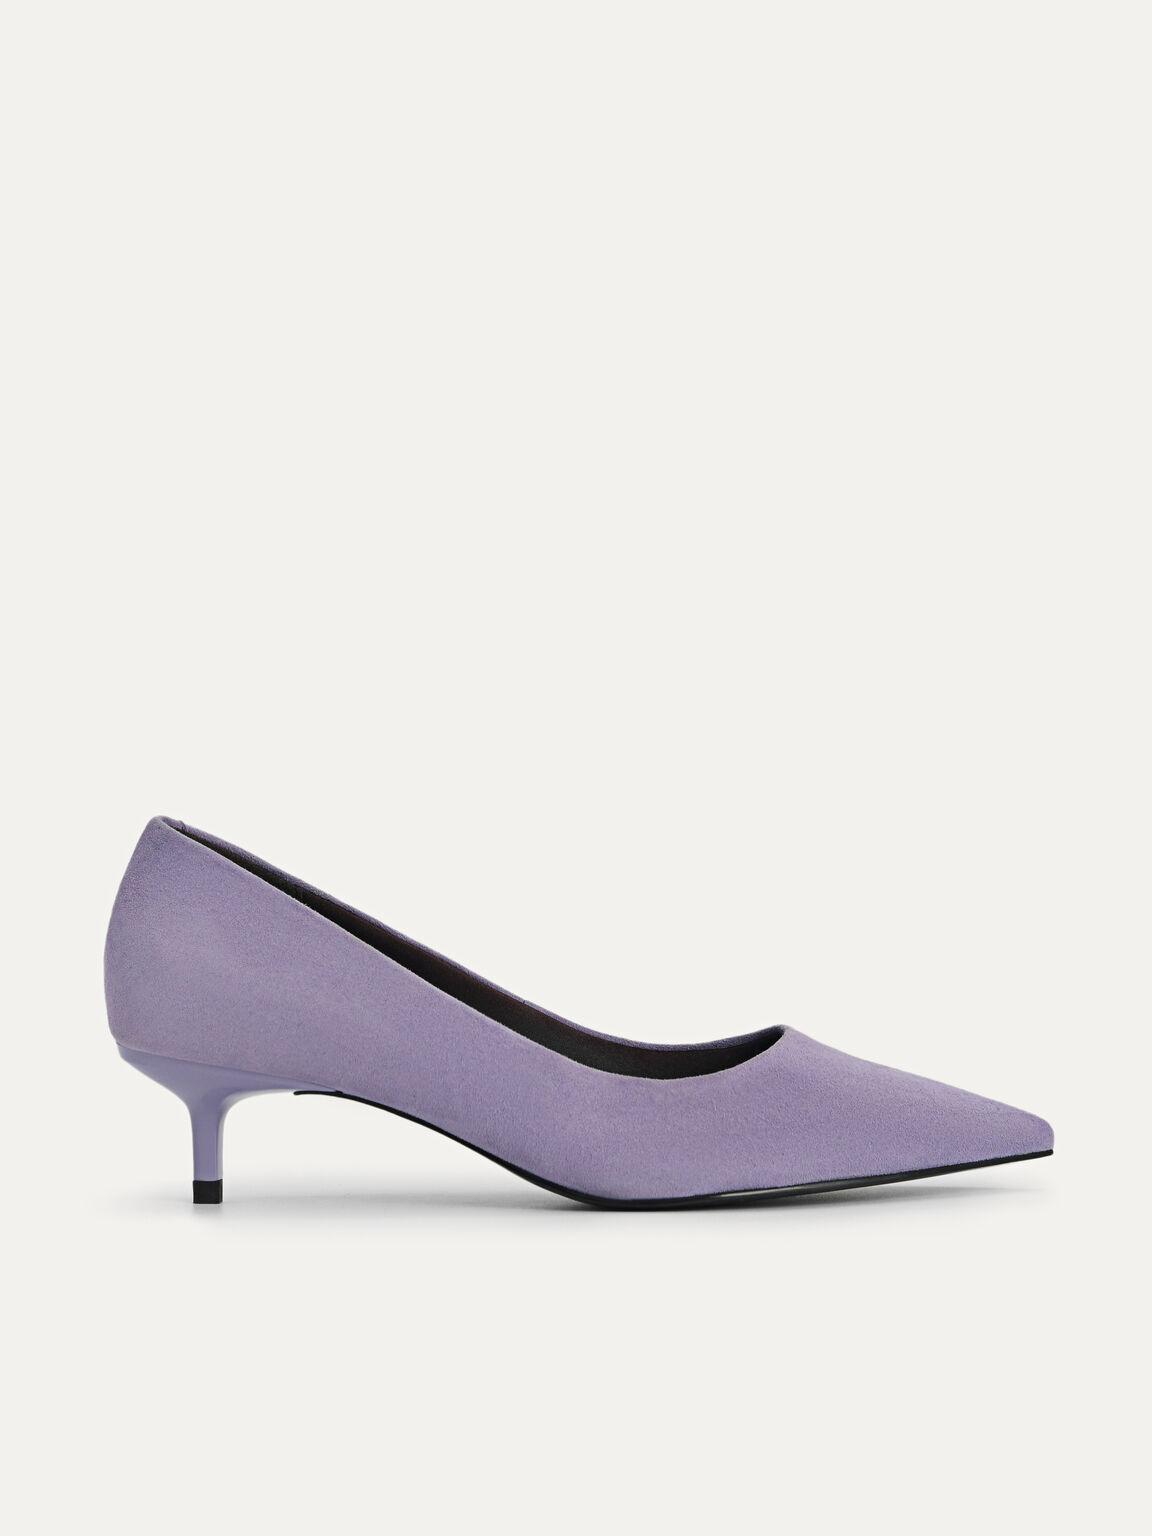 絨皮貓跟鞋, 紫羅蘭色